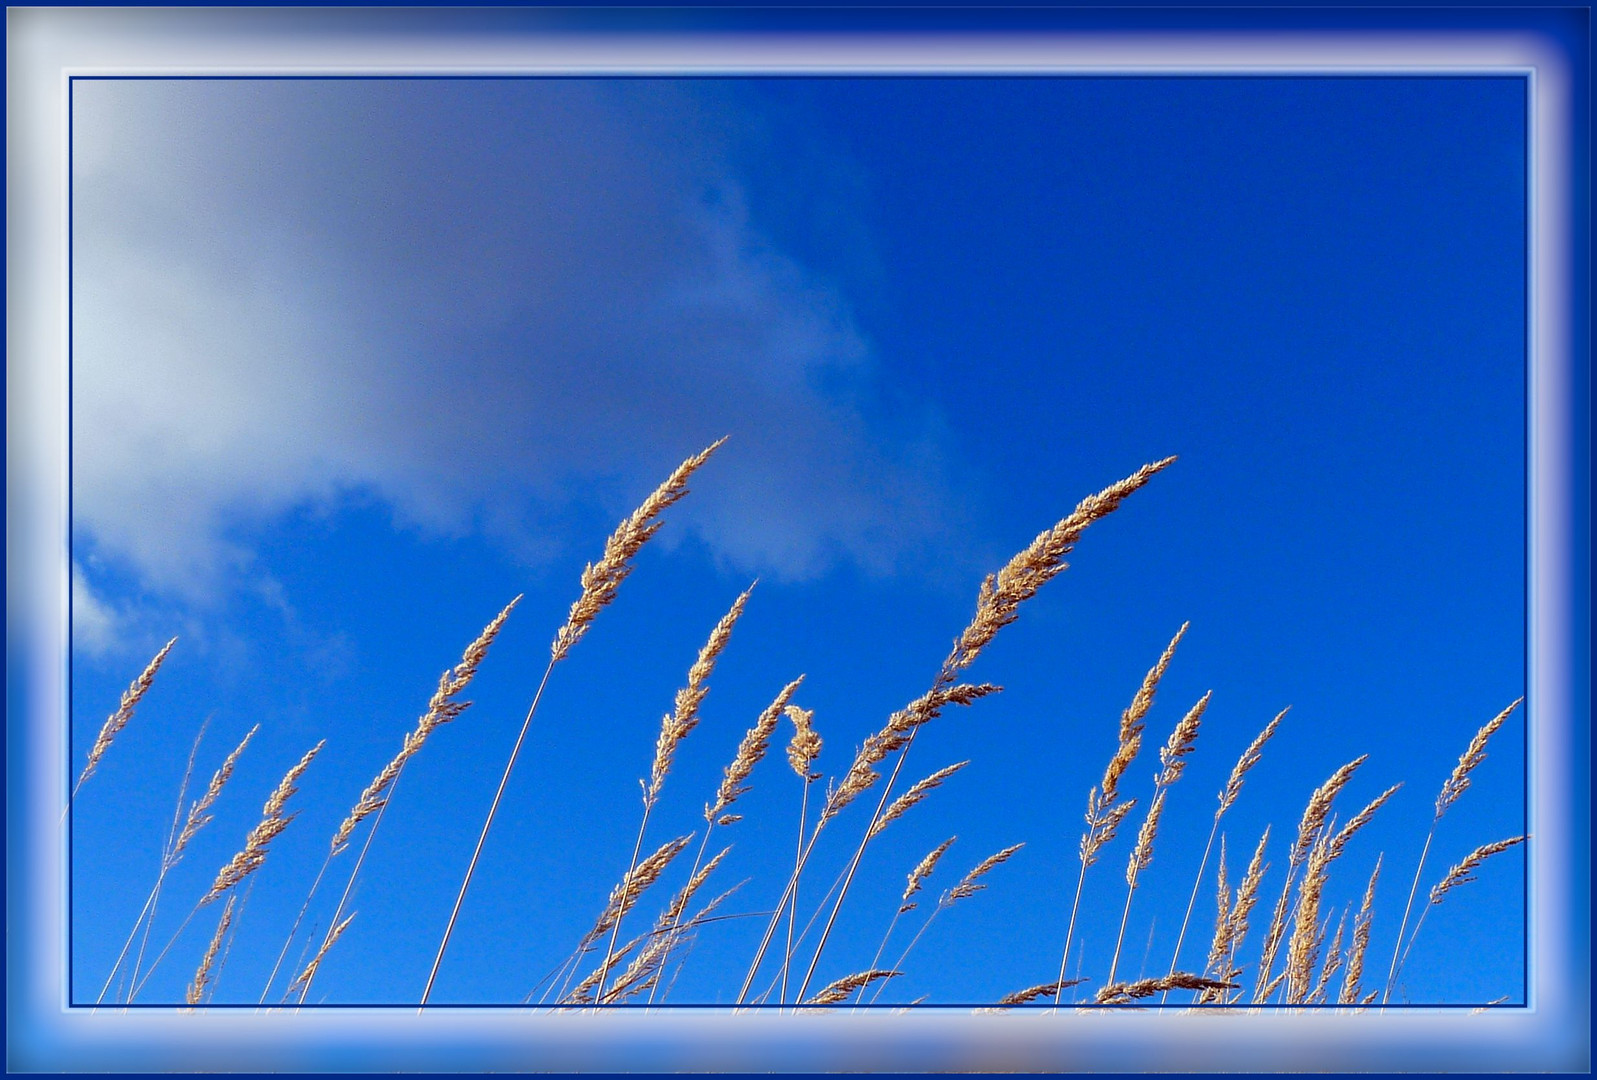 Blue Monday - Blau ist der Himmel, die Gräser ganz zart